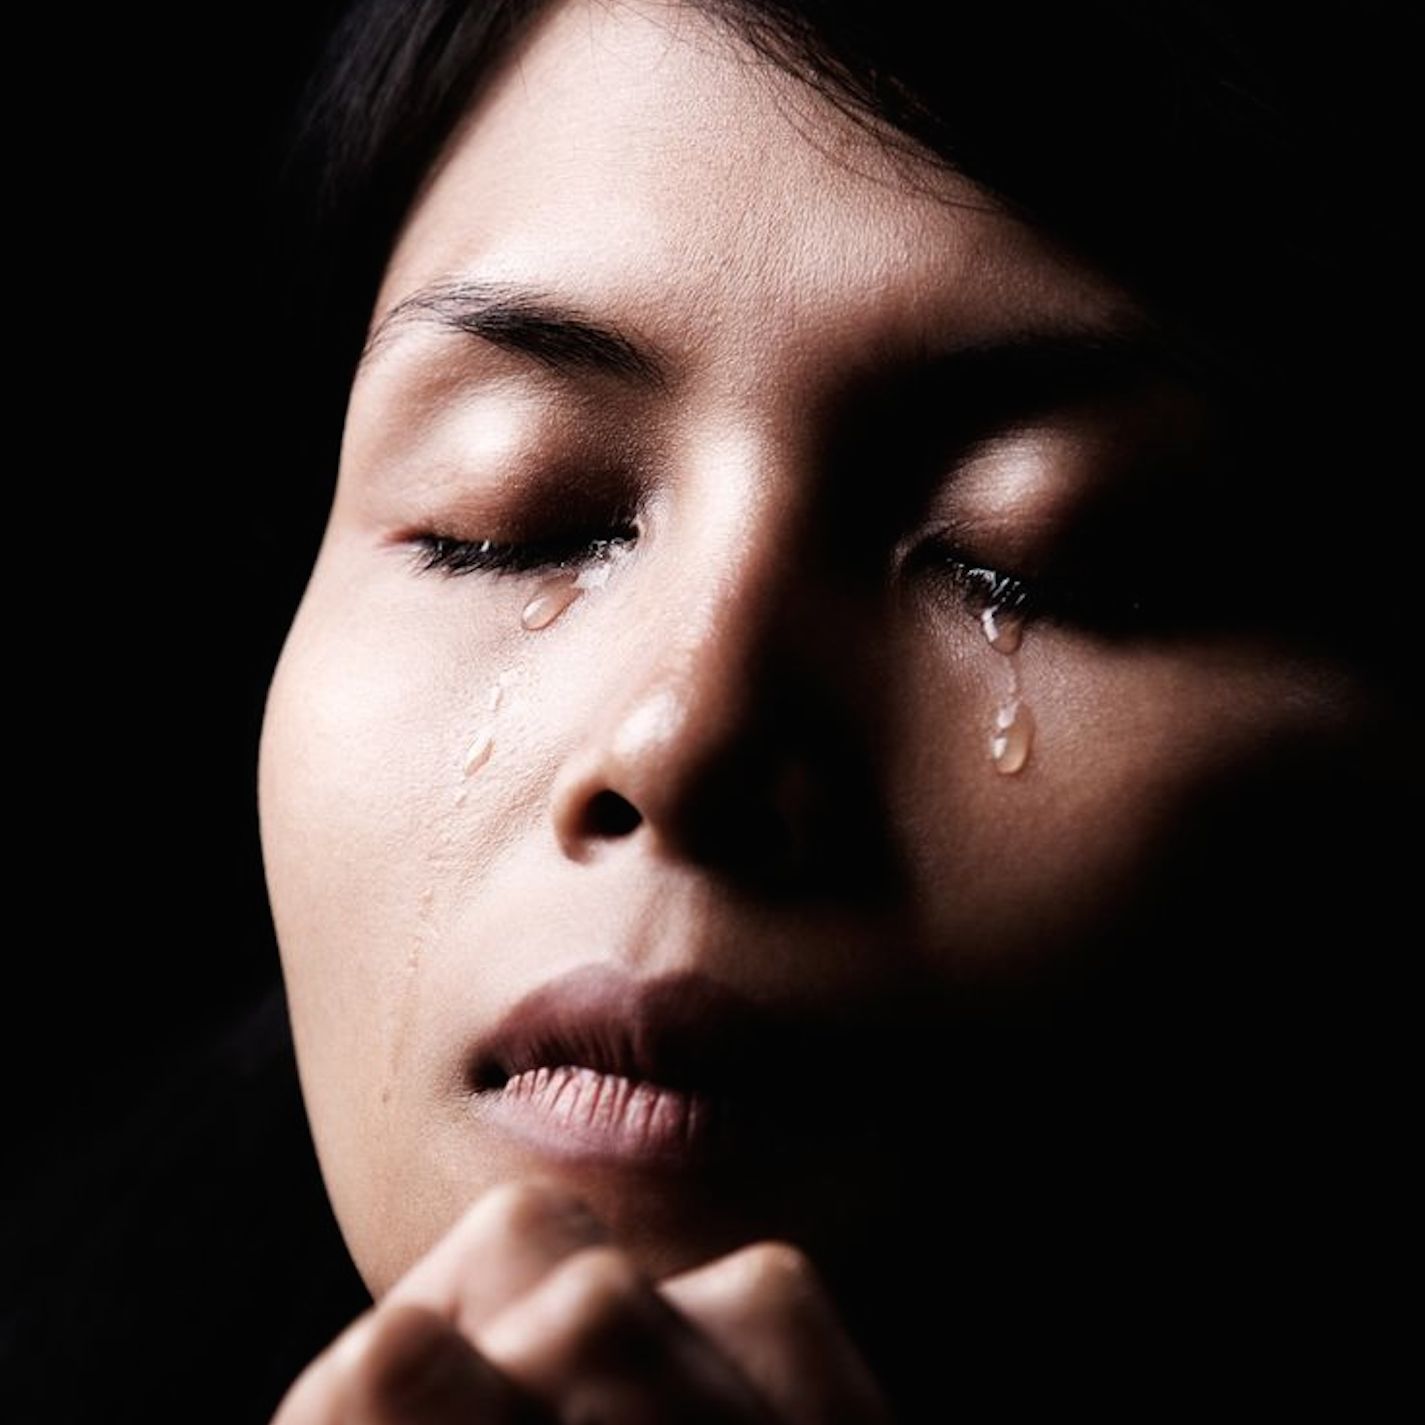 Человек пл. Женщина плачет. Женщина плачем. Женщина молится. Девушка в слезах.